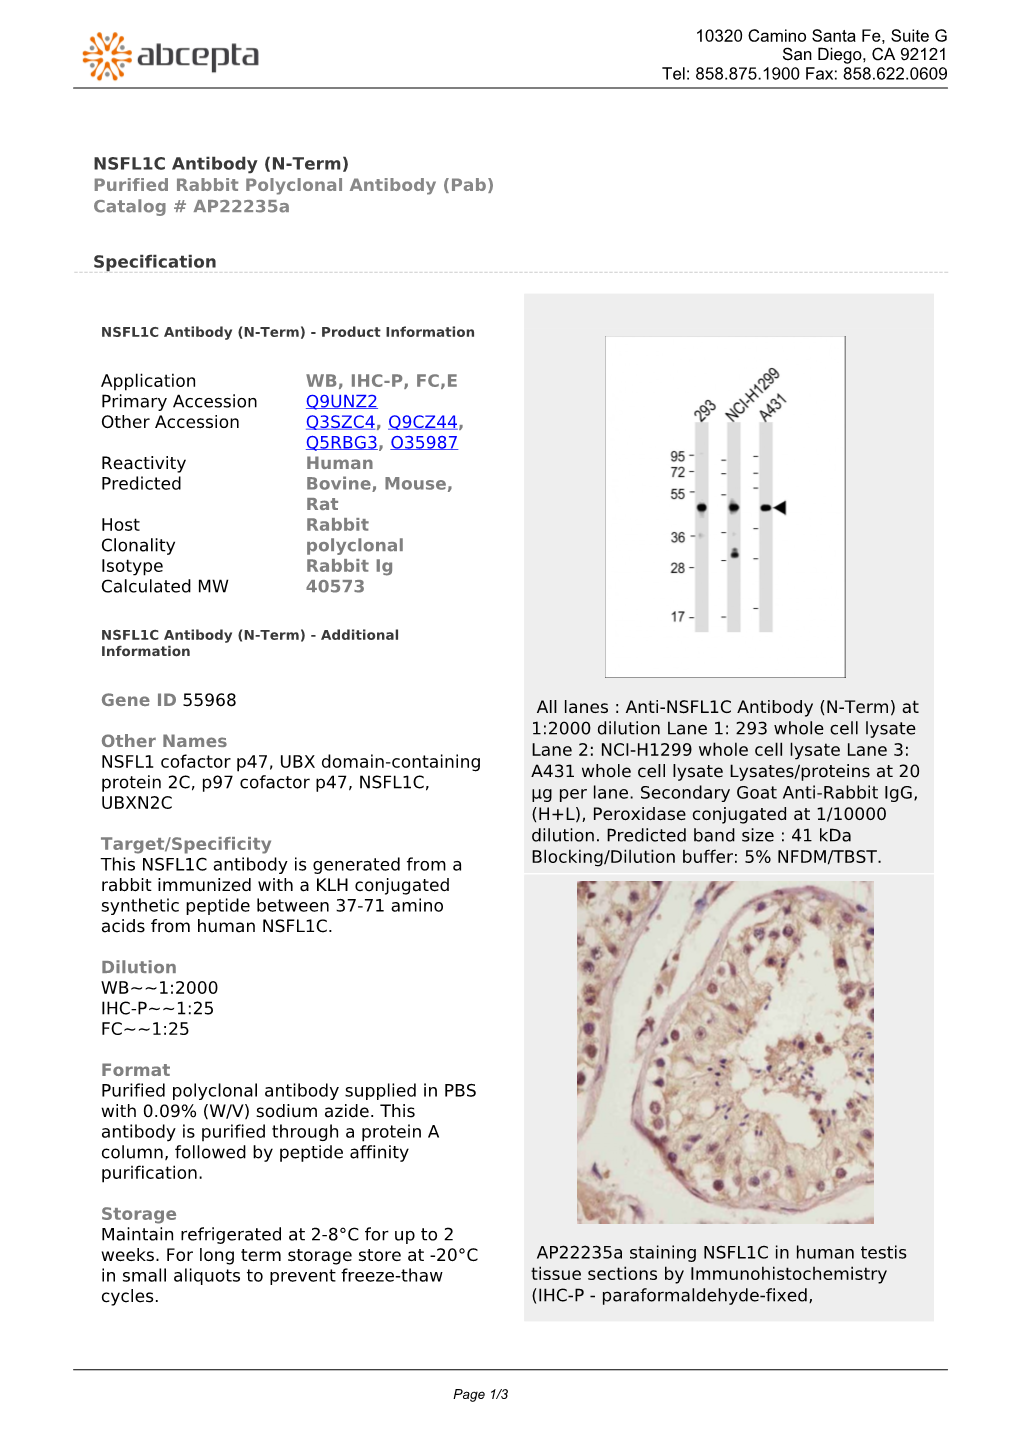 NSFL1C Antibody (N-Term) Purified Rabbit Polyclonal Antibody (Pab) Catalog # Ap22235a